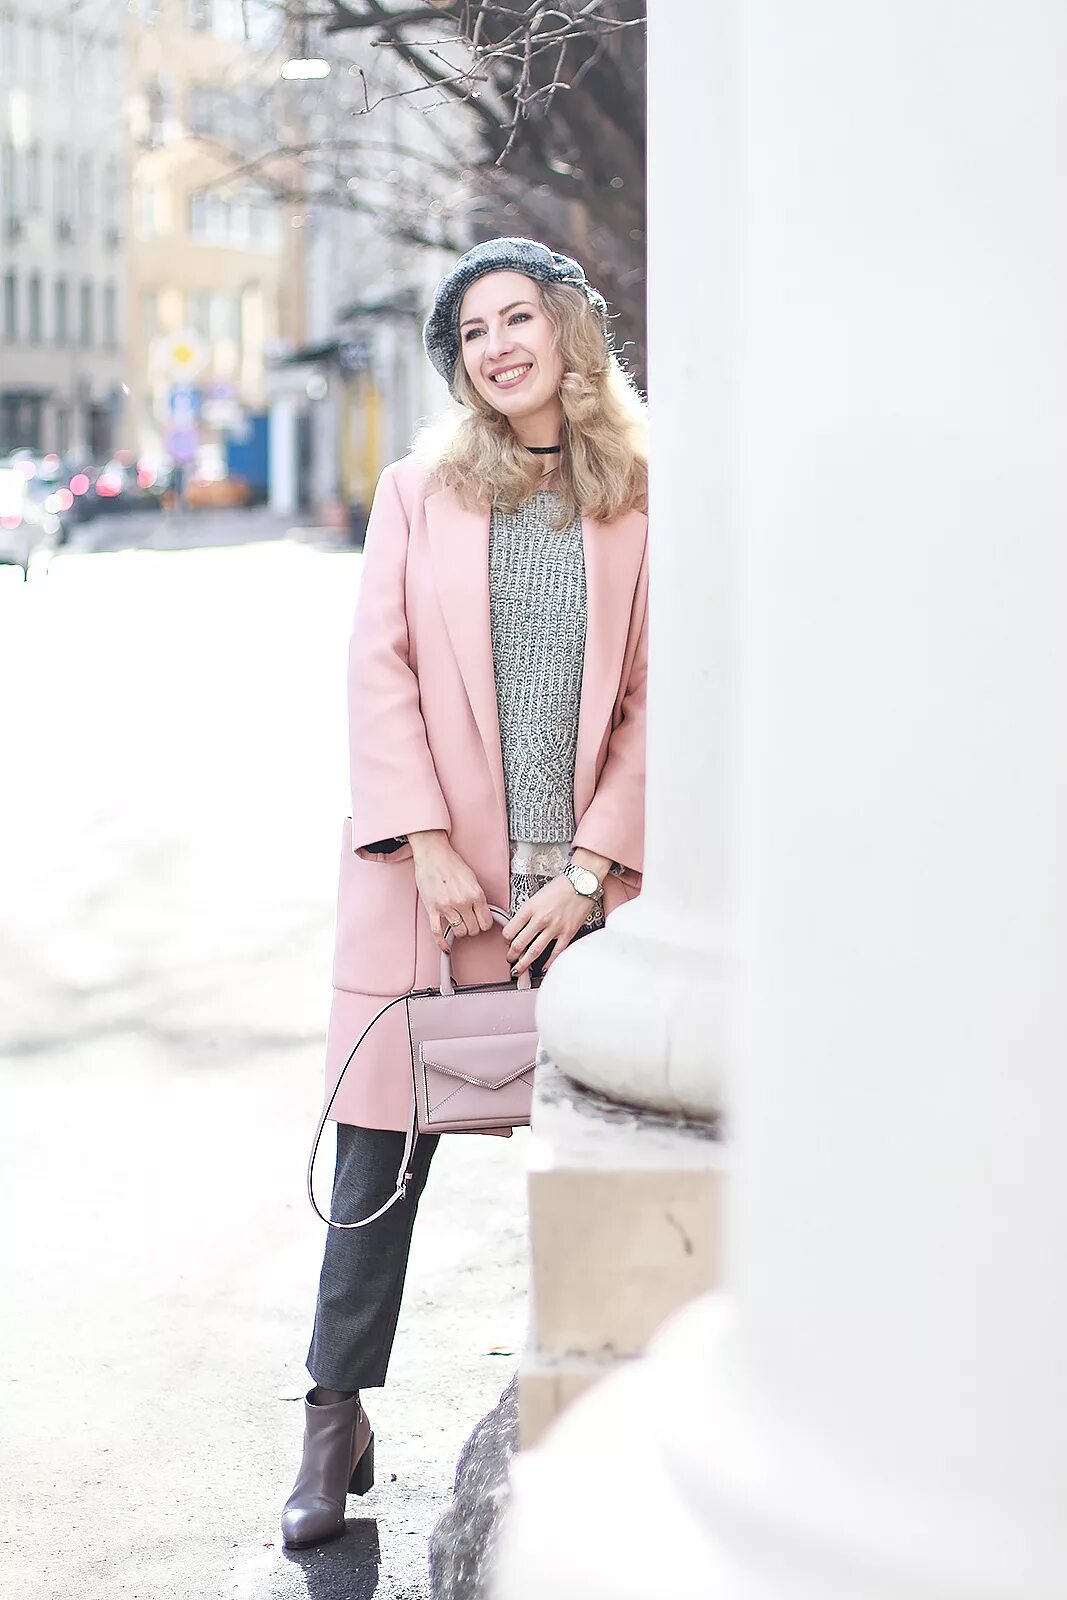 Серо розовое пальто. Зимний образ в светлых тонах. Верхняя одежда в романтическом стиле. Образ в пудровом цвете. Пальто пыльно розового цвета.